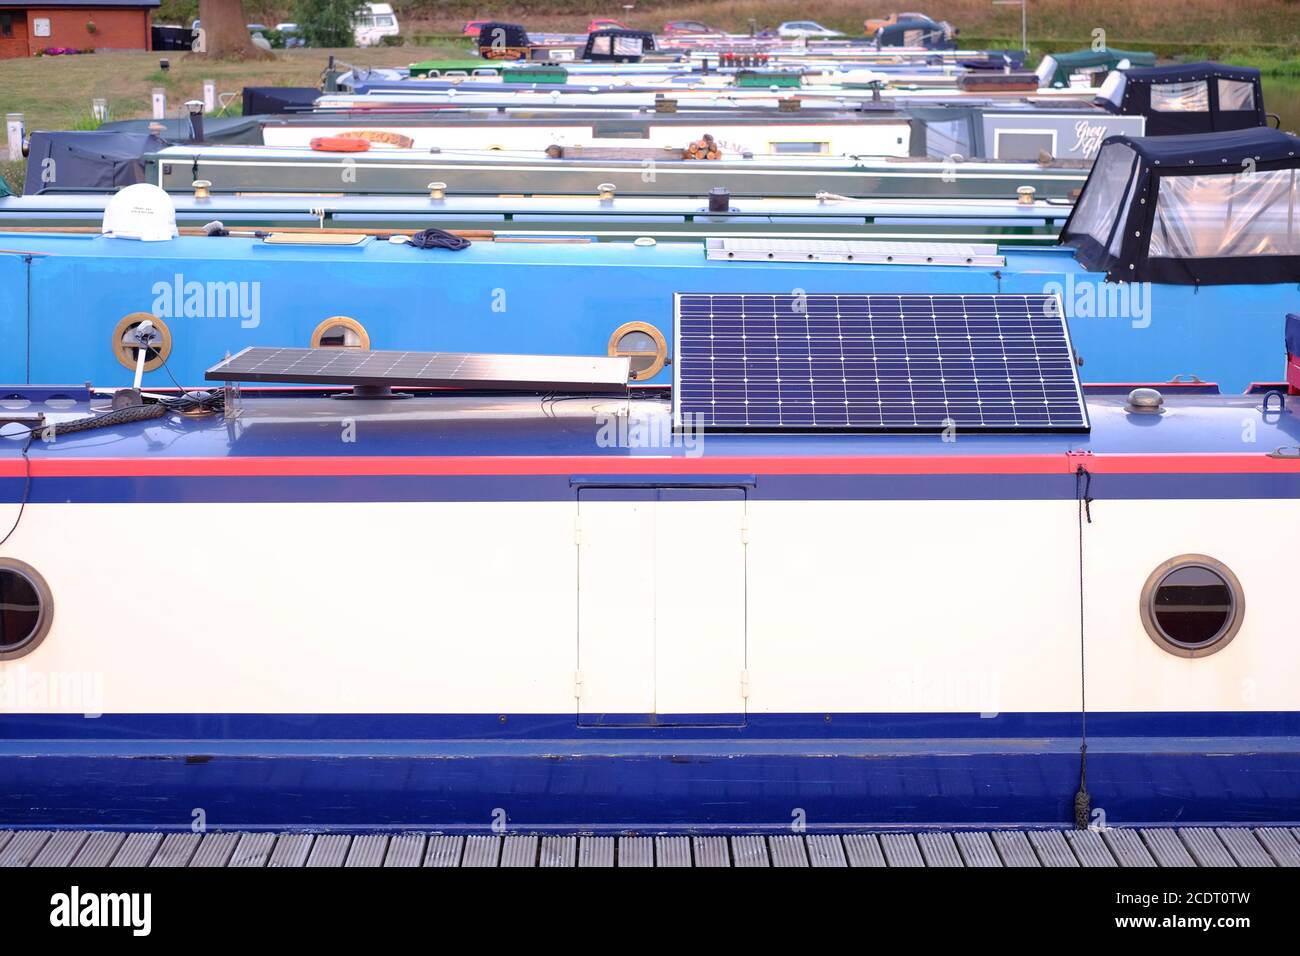 Sonnenkollektoren auf dem Dach des Kanals schmales Boot, das aus zur Verfügung stellt Netzstrom Stockfoto